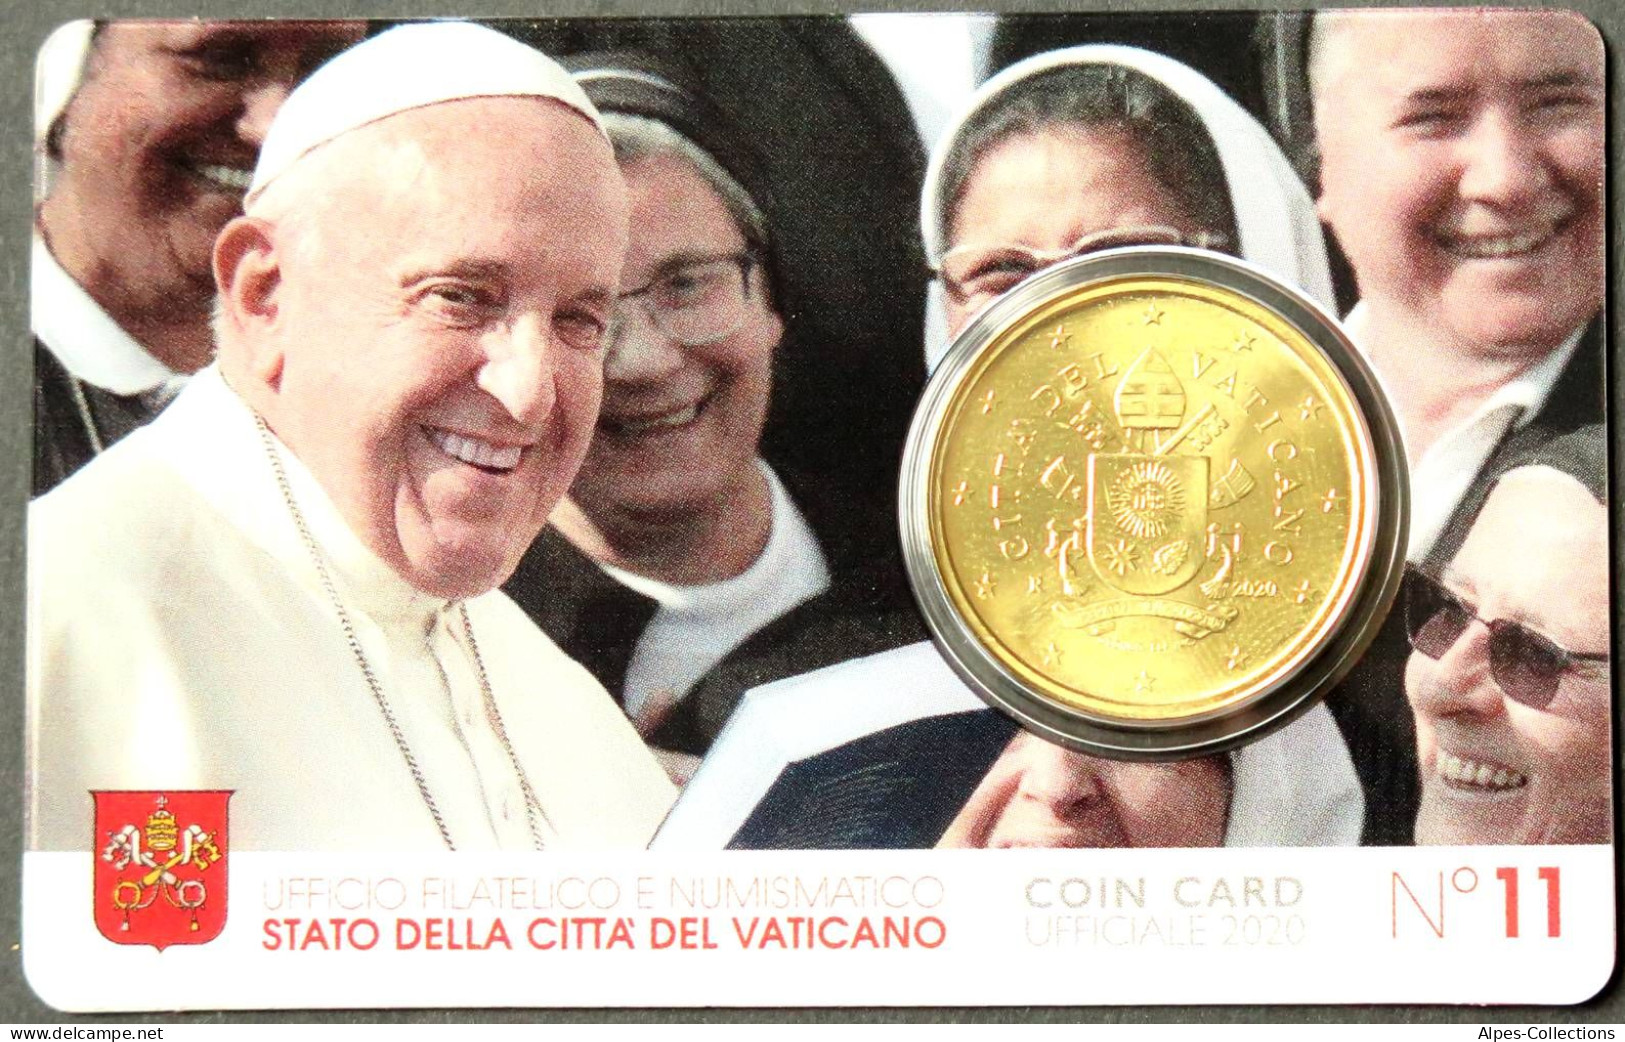 VA05020.1 - COIN CARD N°11 VATICAN - 2020 - 50 Cents - Vatican